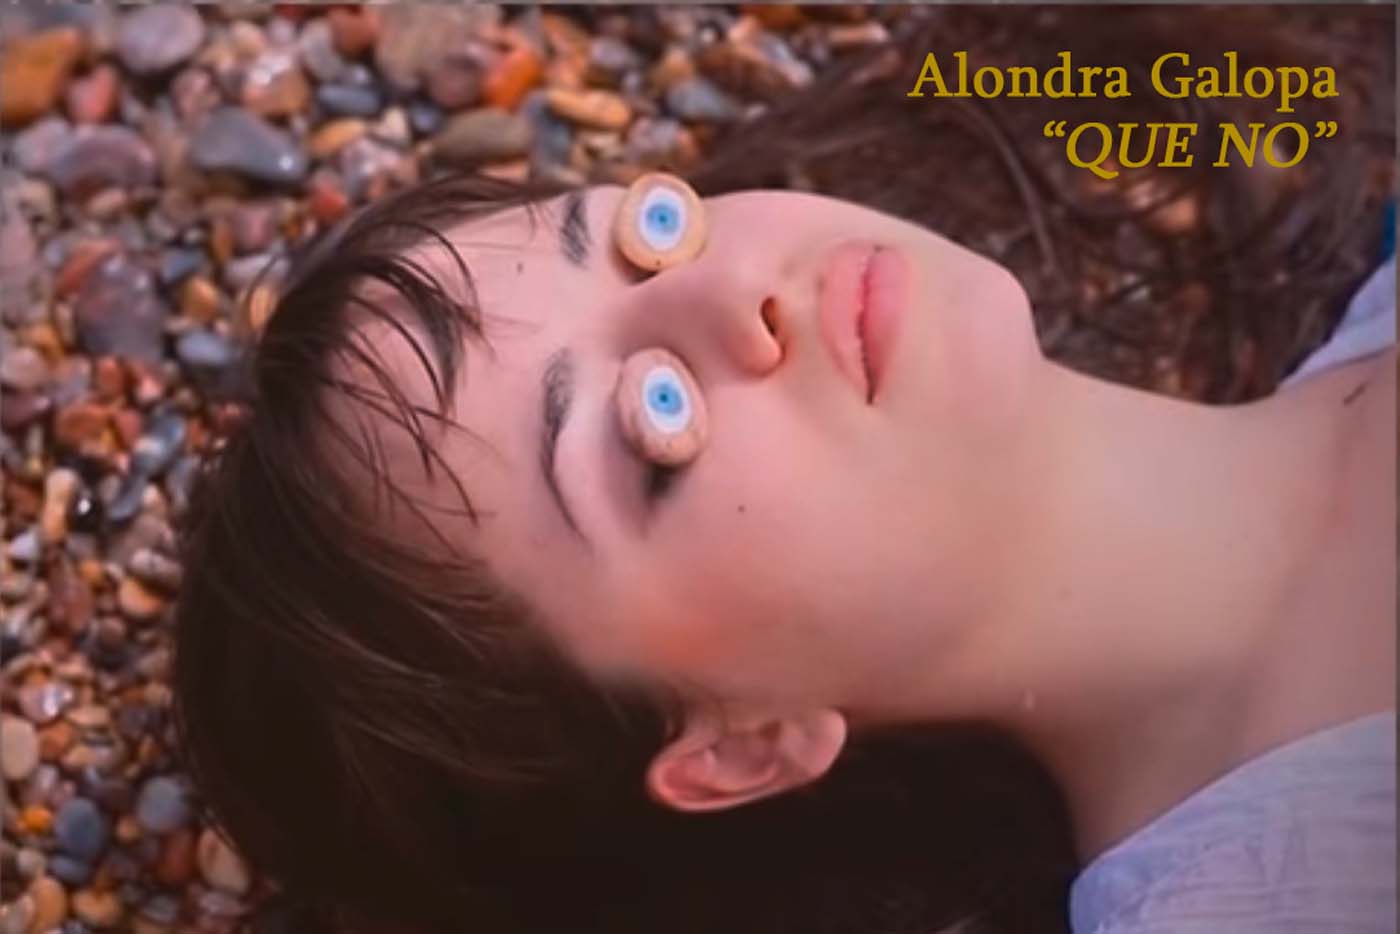 Llega "Que no", nuevo videoclip de Alondra Galopa